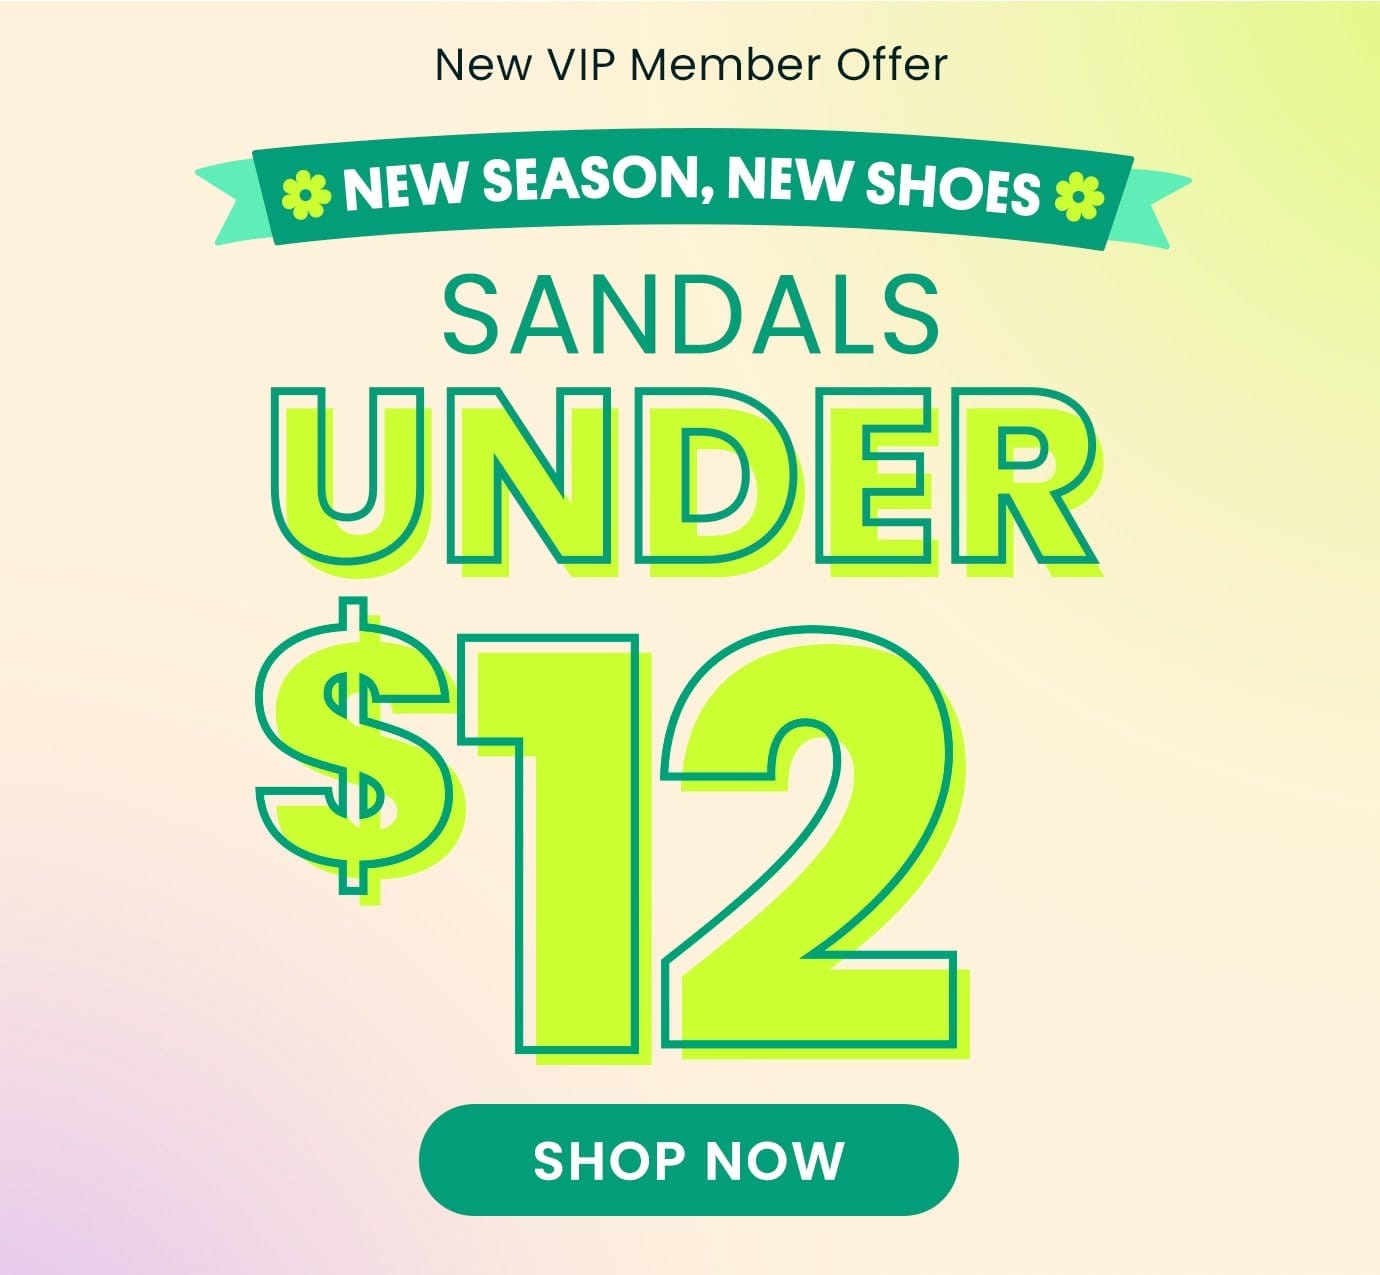 Sandals under \\$12